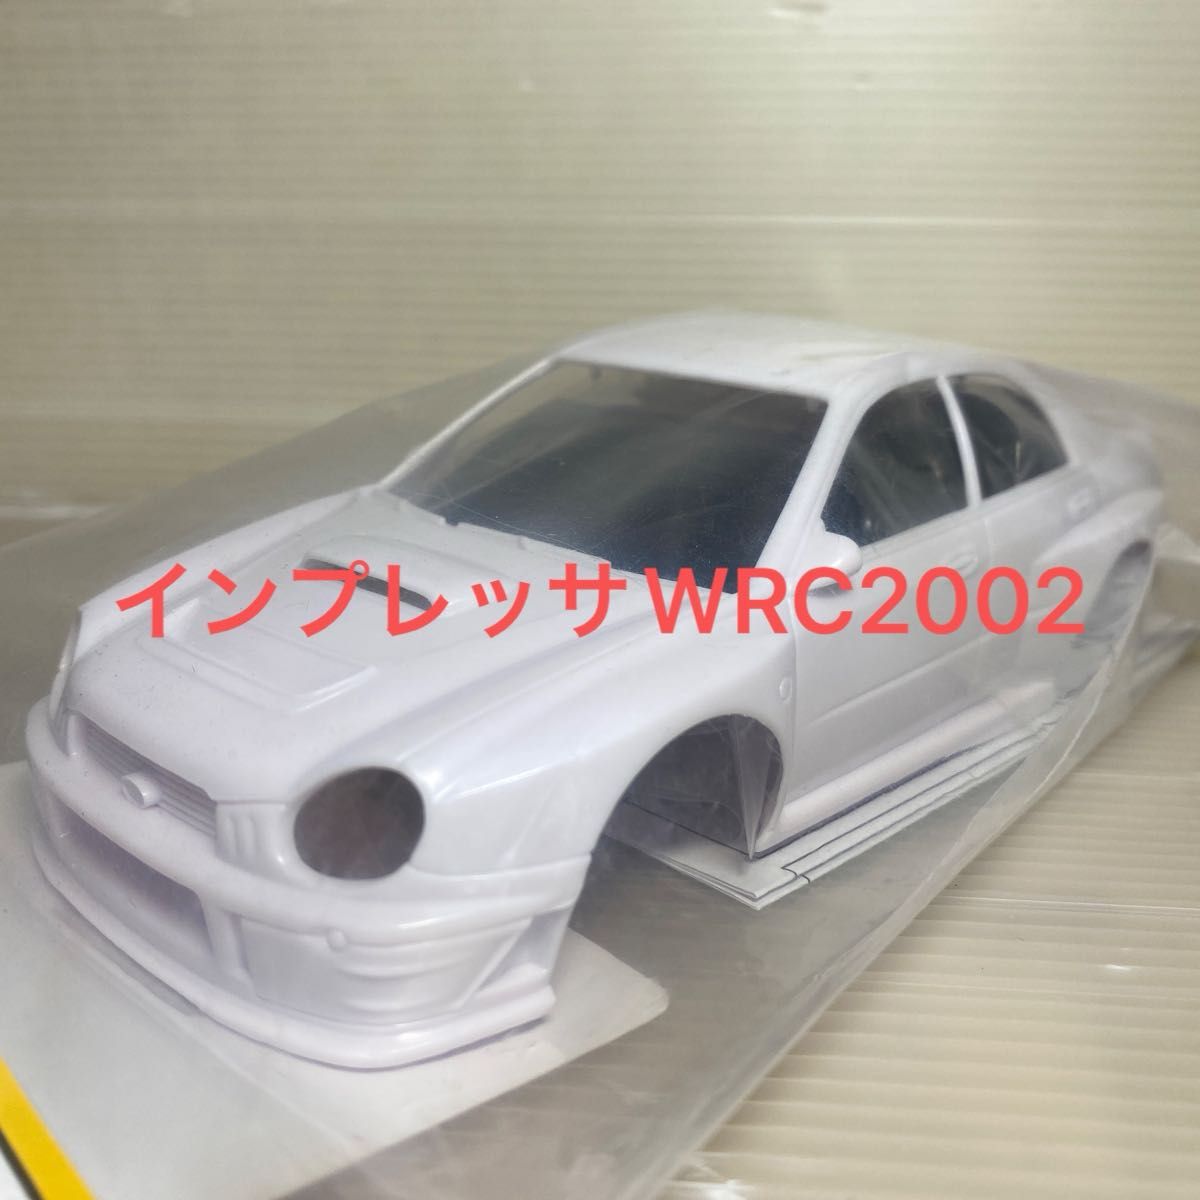 京商ミニッツImpreza WRC 2002 ホワイトボディセット未塗装ホイル付 MZN200